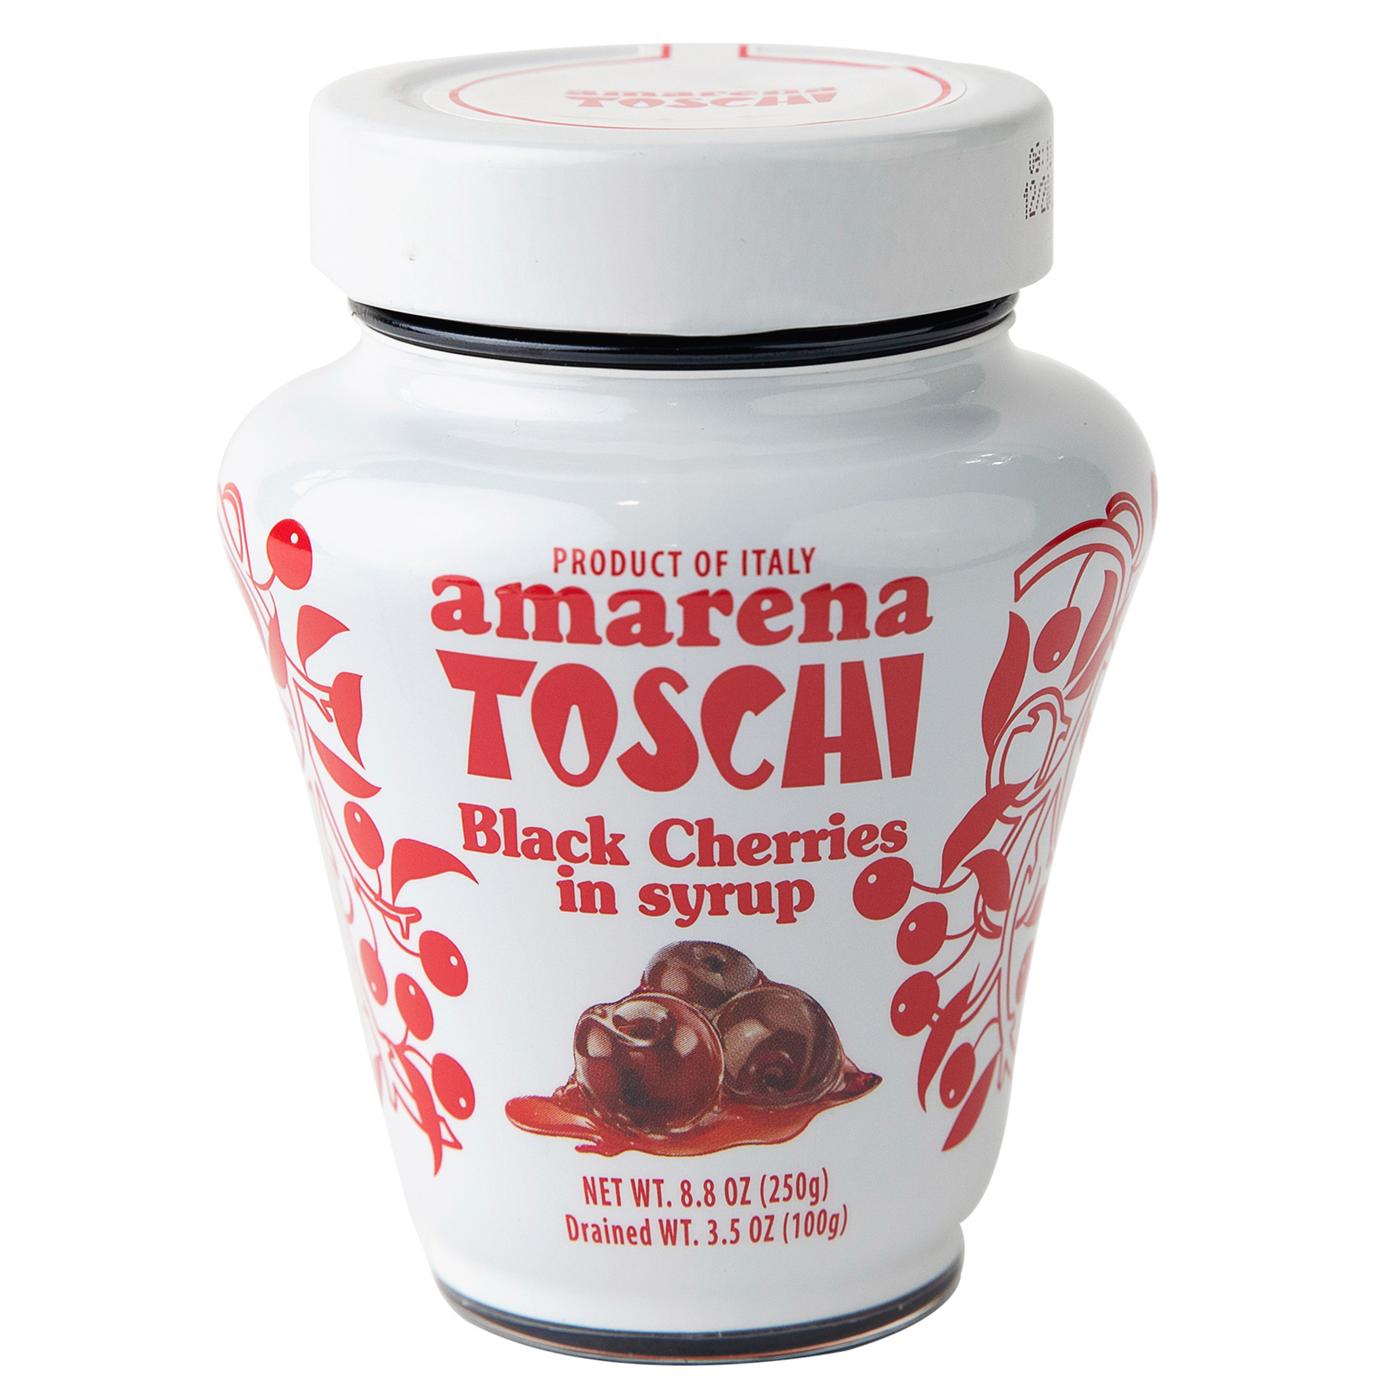 Amarena Toschi Black Cherries in Syrup; image 1 of 2